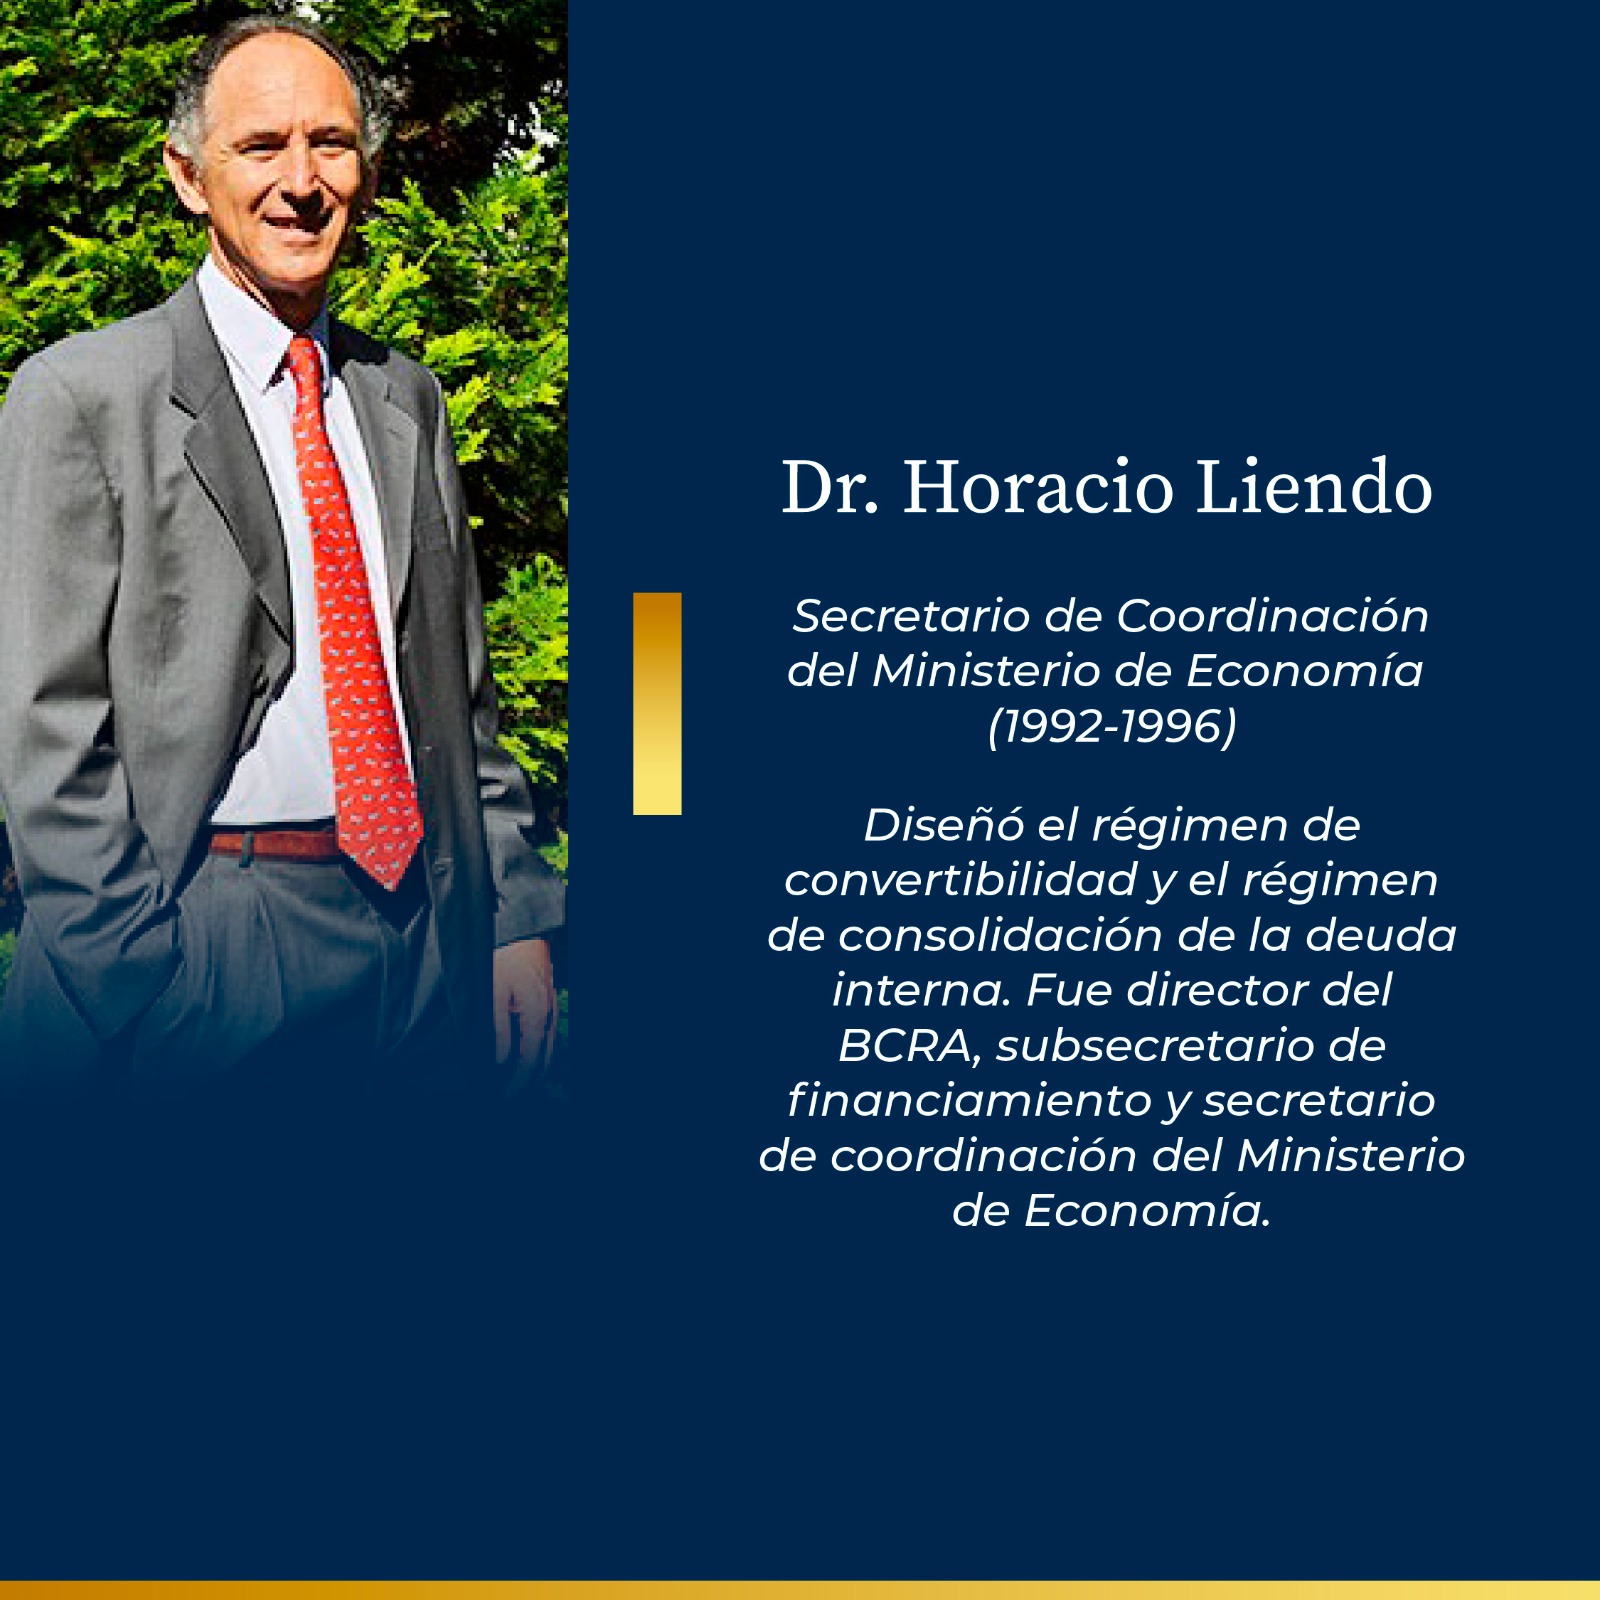 Dr. Horacio Liendo